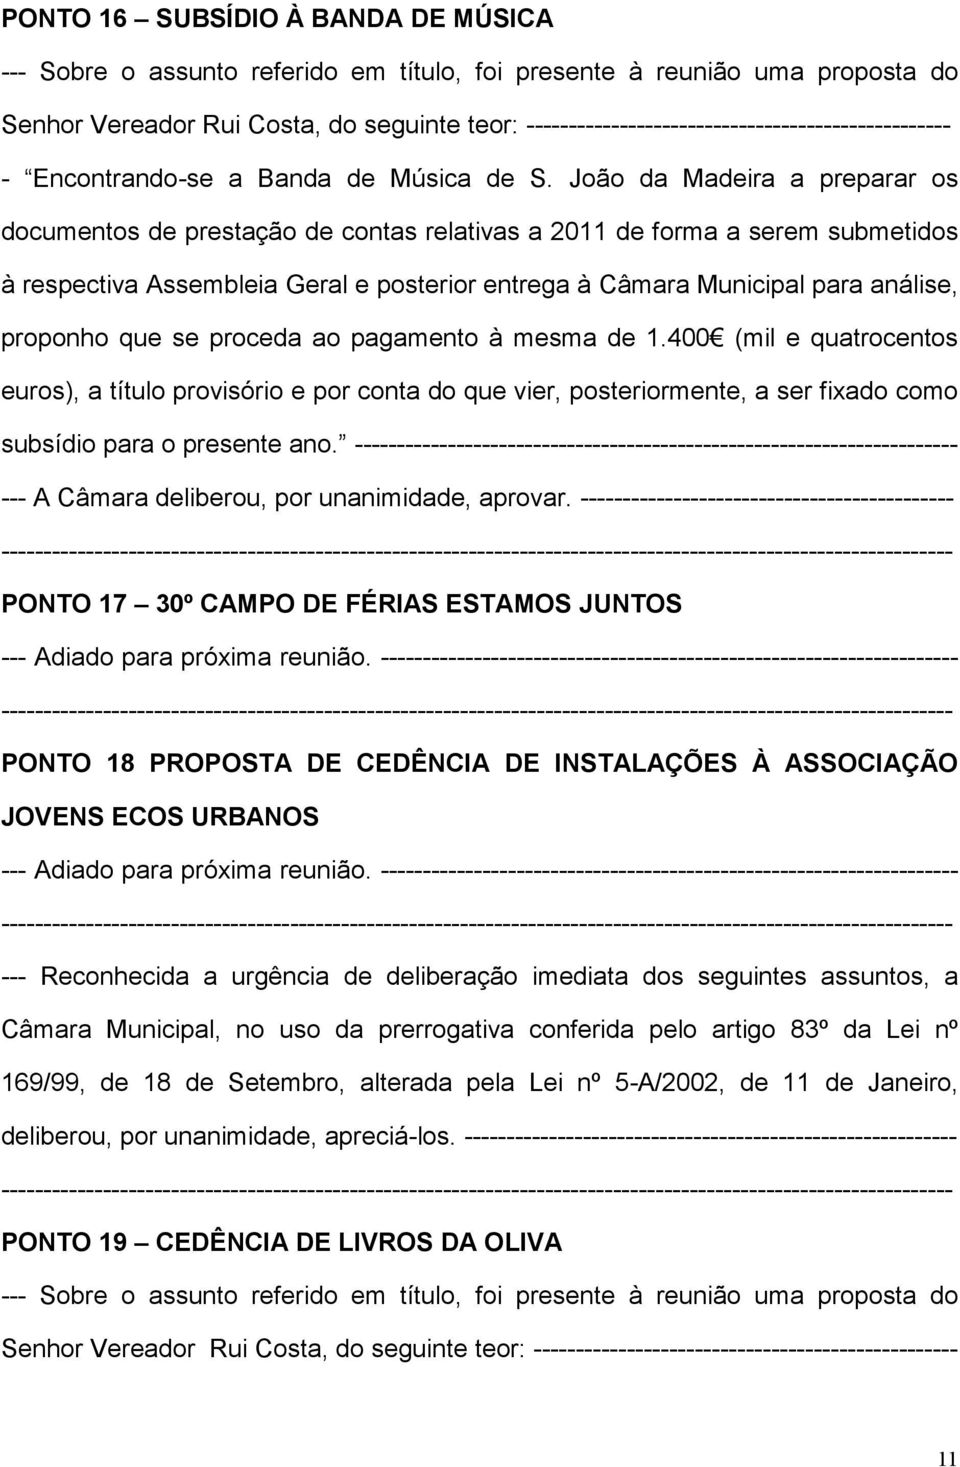 João da Madeira a preparar os documentos de prestação de contas relativas a 2011 de forma a serem submetidos à respectiva Assembleia Geral e posterior entrega à Câmara Municipal para análise,